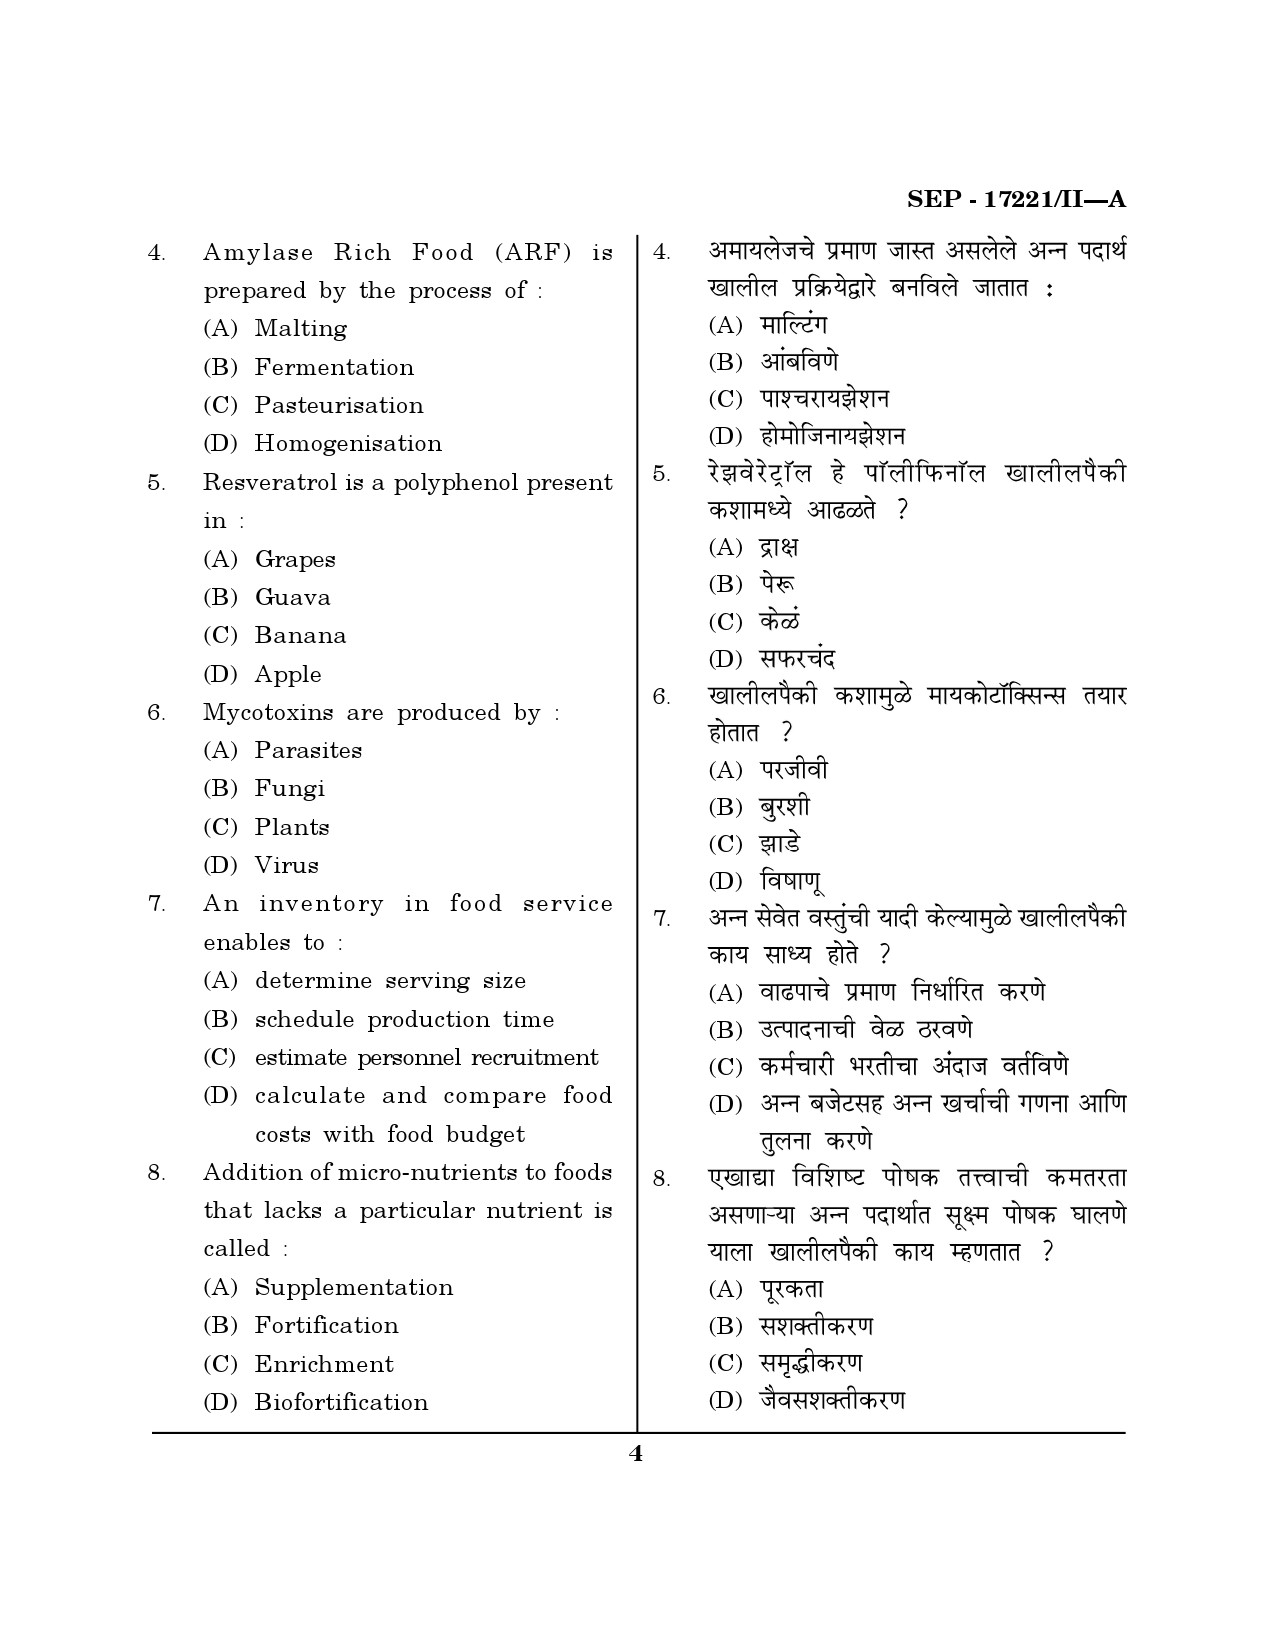 Maharashtra SET Home Science Exam Question Paper September 2021 3